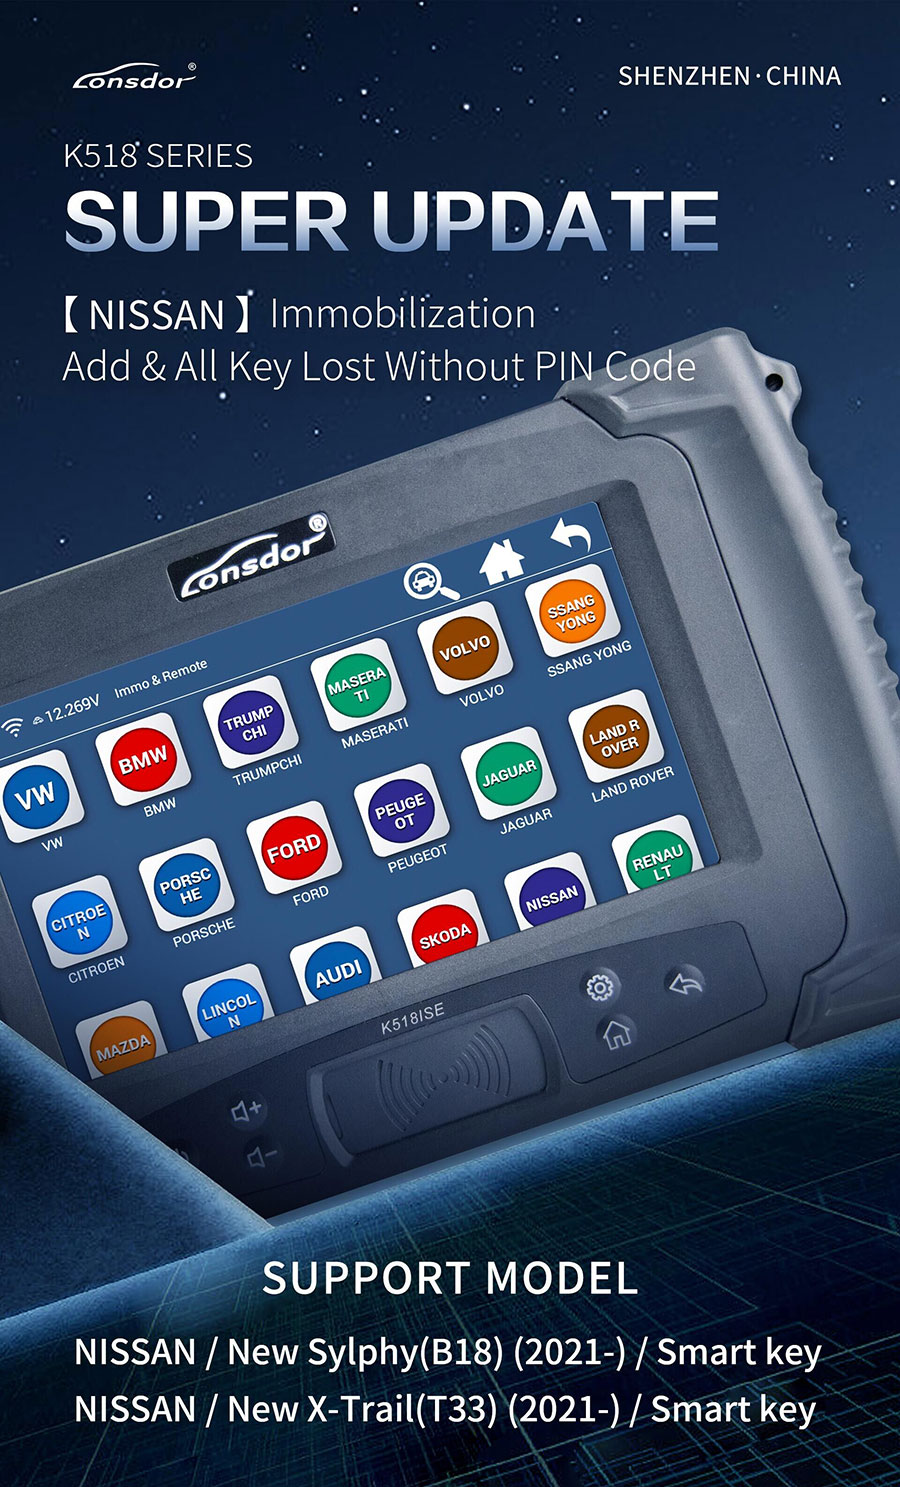 Lonsdor K518 Release Nissan software AKL Bypass PIN